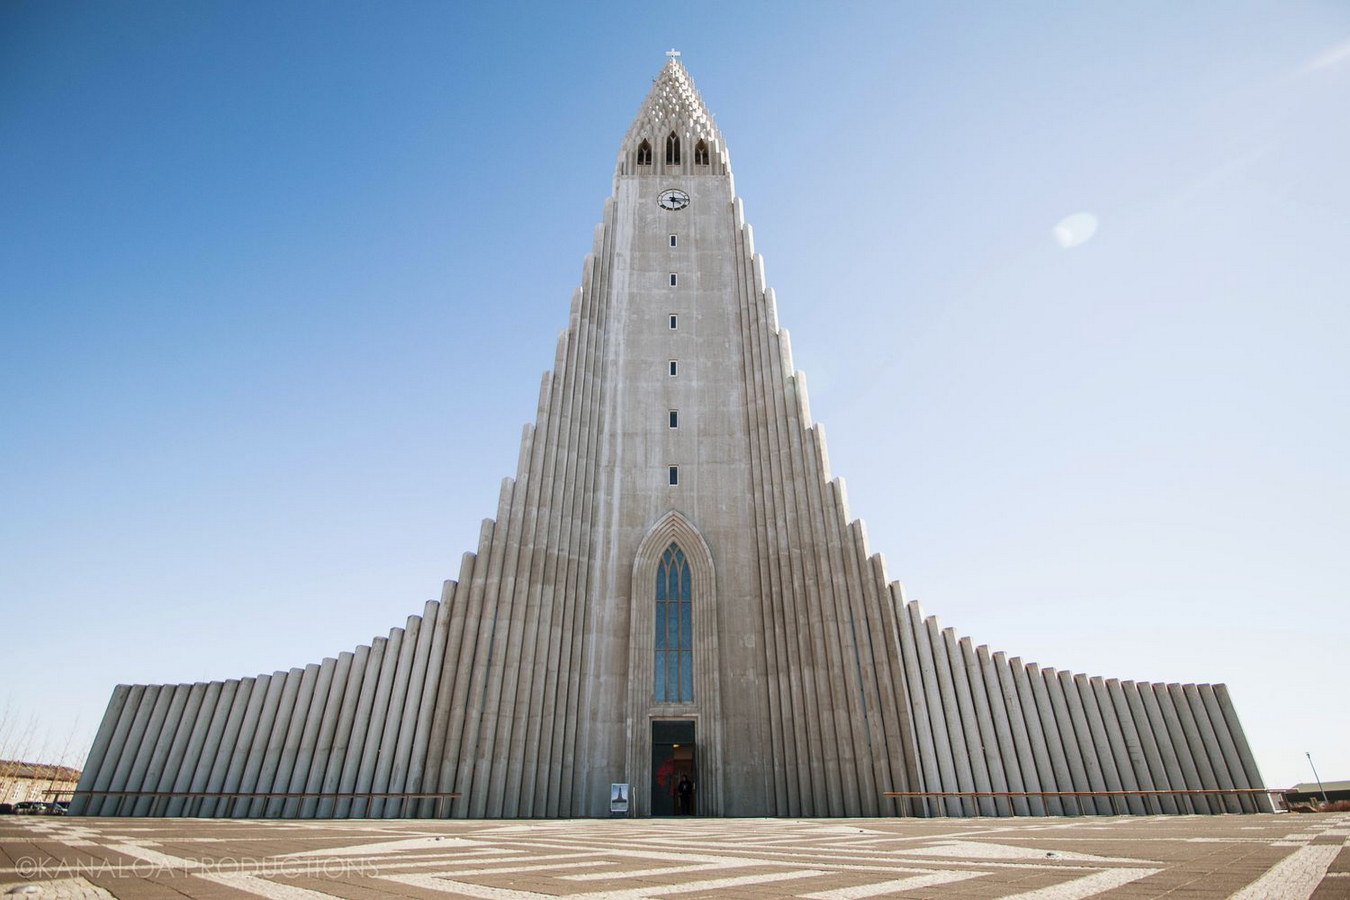 Chùm ảnh: Hallgrimskirkja - nhà thờ kiến trúc độc đáo ở Iceland ...